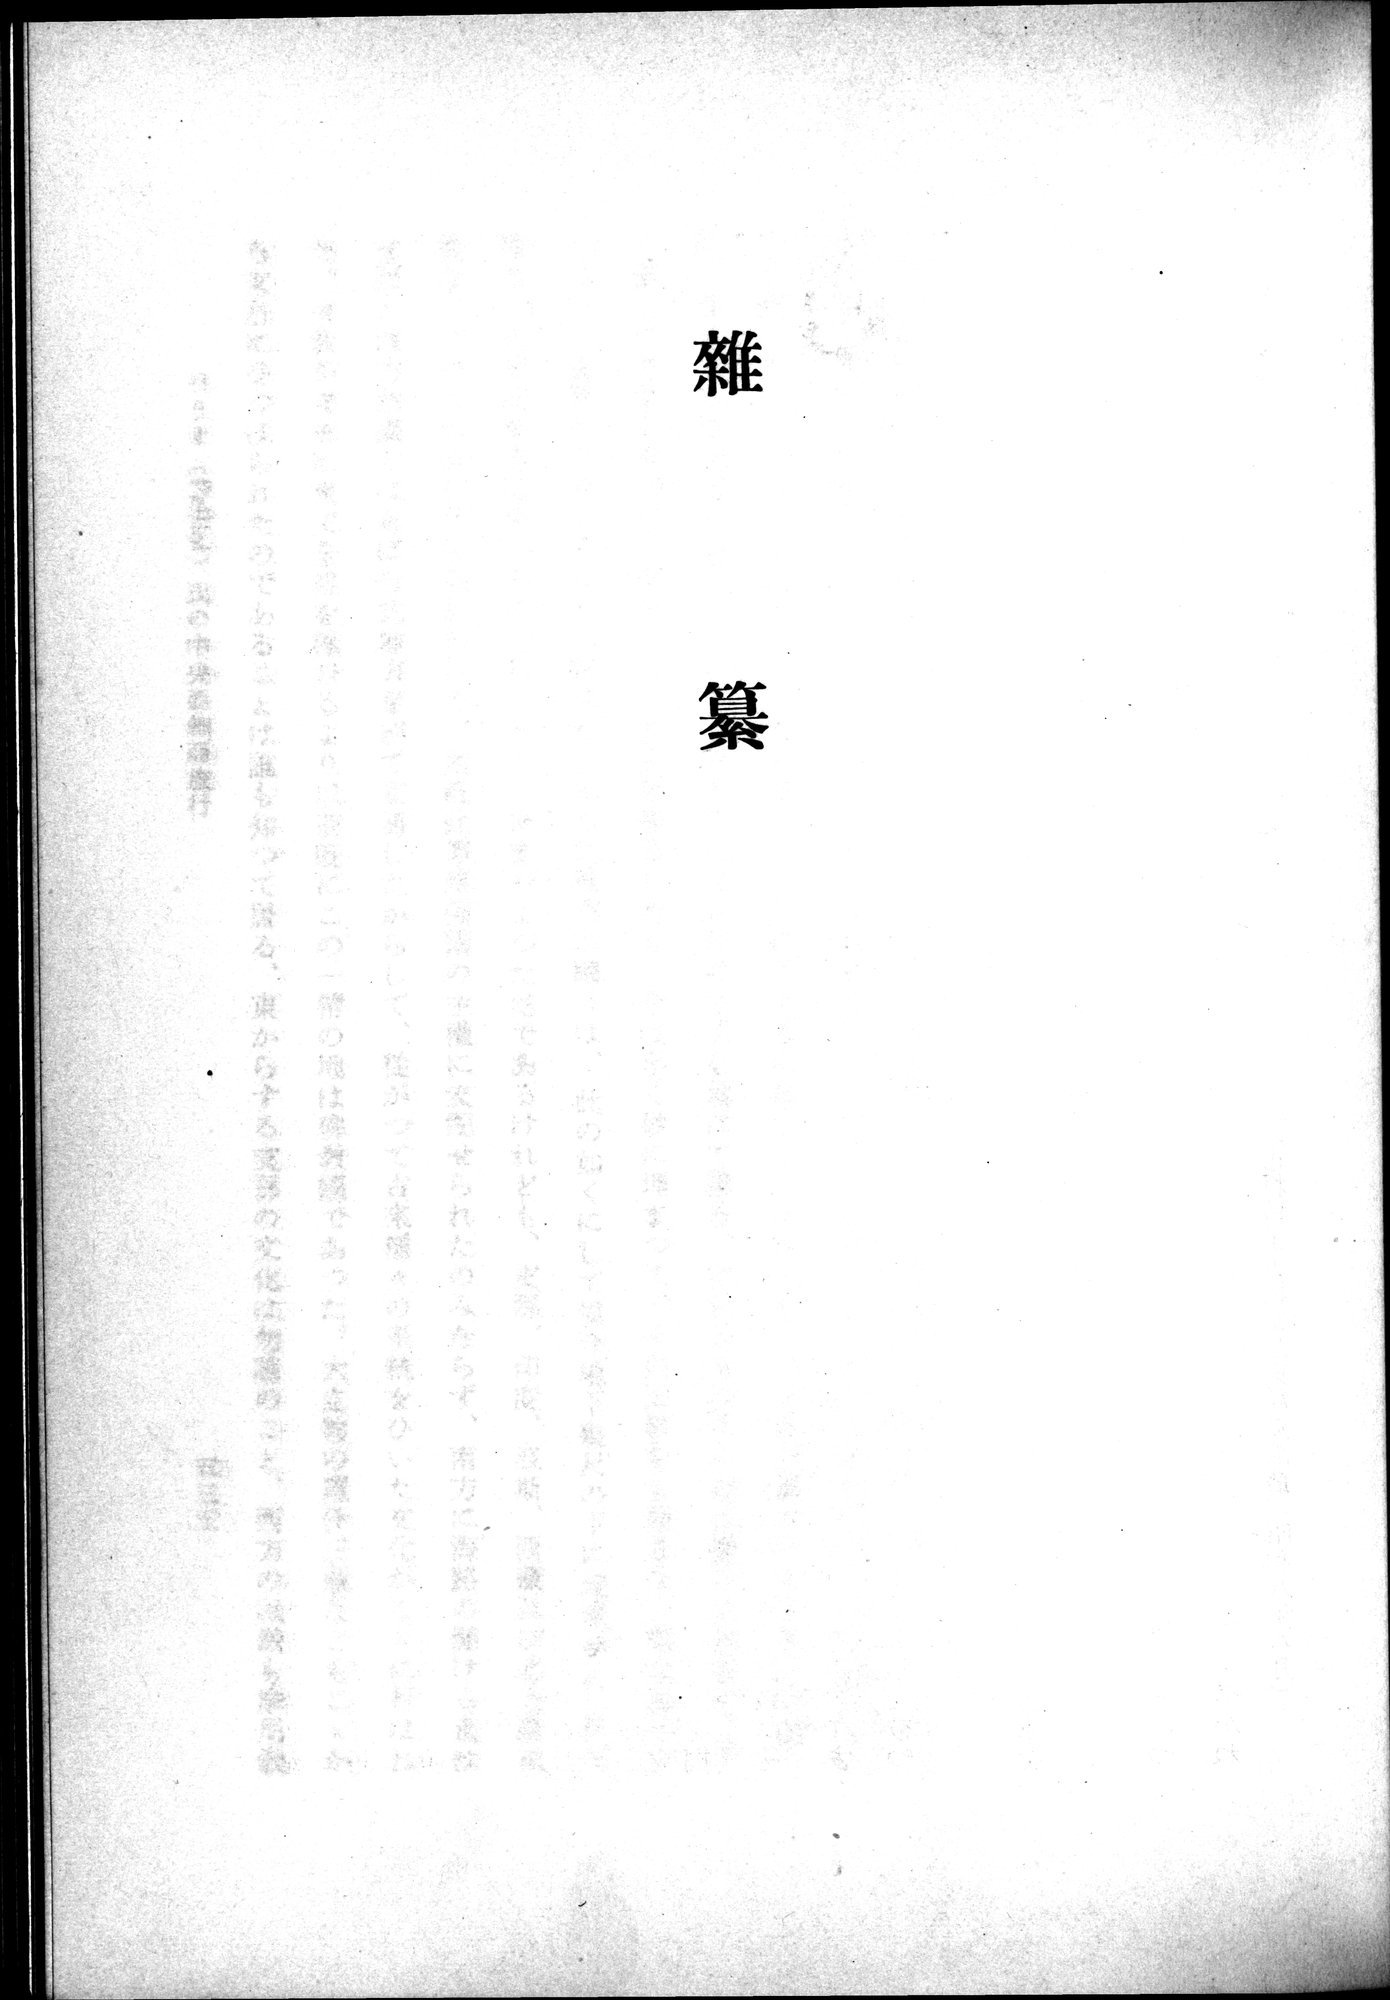 羽田博士史学論文集 : vol.2 / Page 593 (Grayscale High Resolution Image)